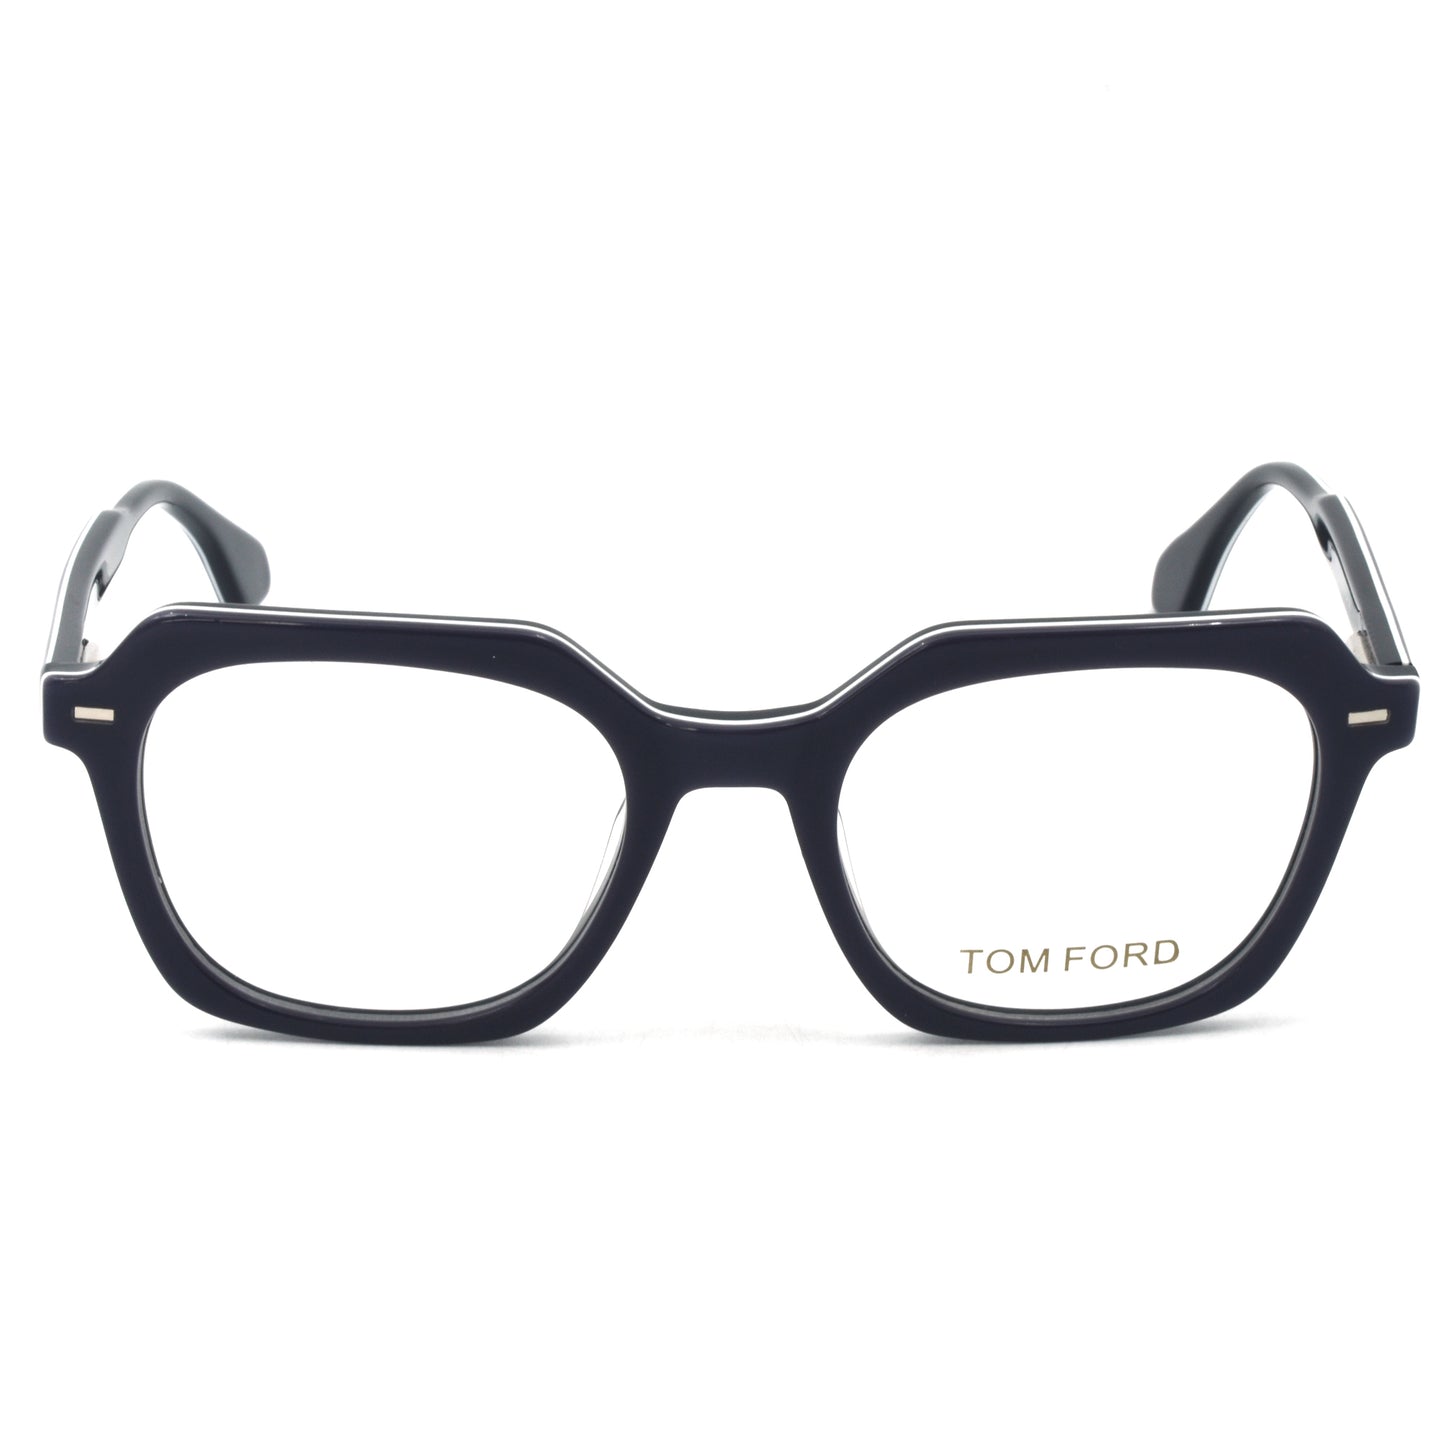 Trendy Stylish Optic Frame | TFord Frame 47 | Premium Quality Eye Glass